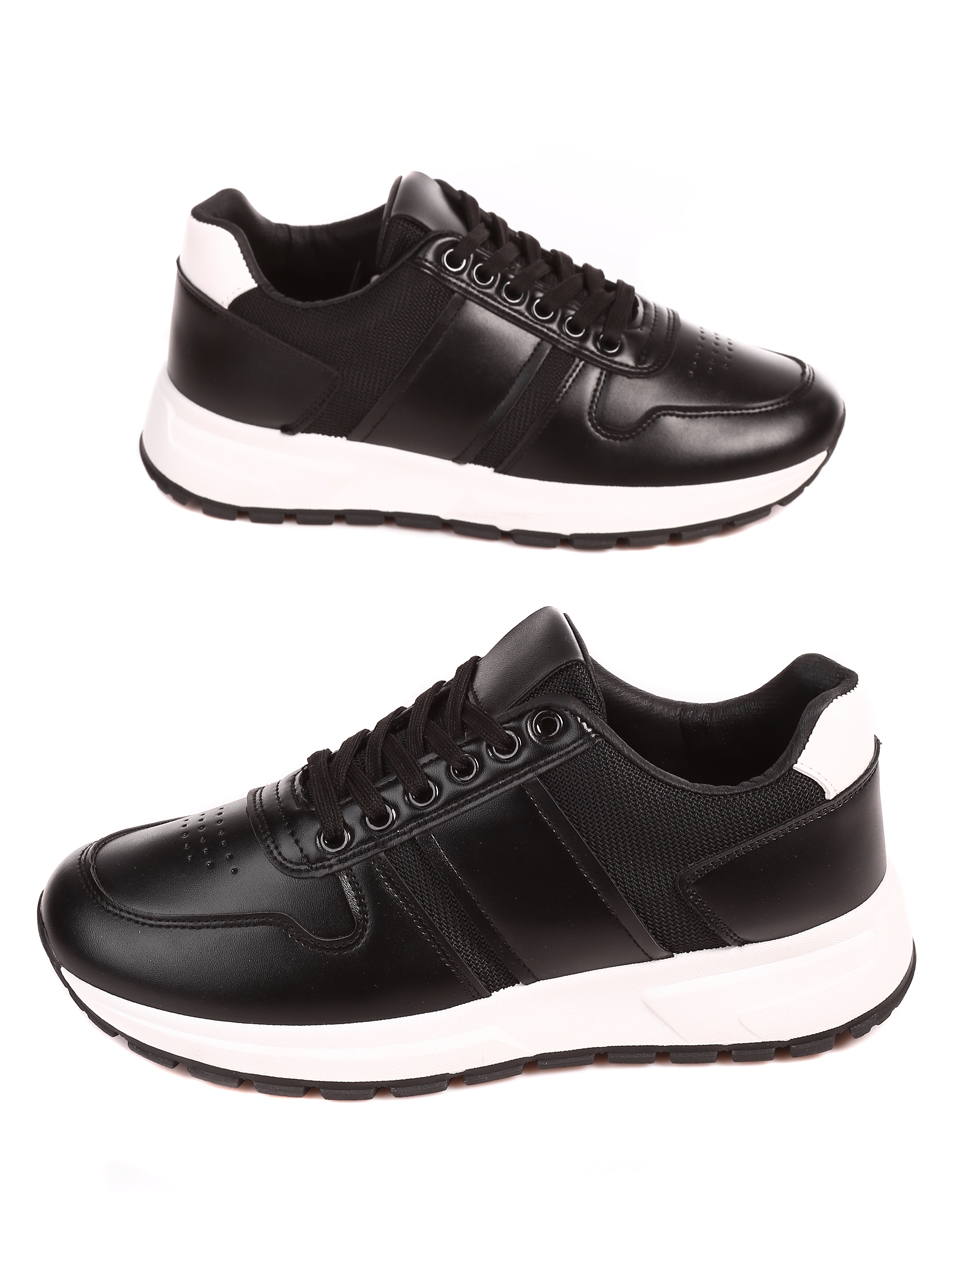 Ежедневни мъжки обувки в черно и бяло 7U-22596 black/white